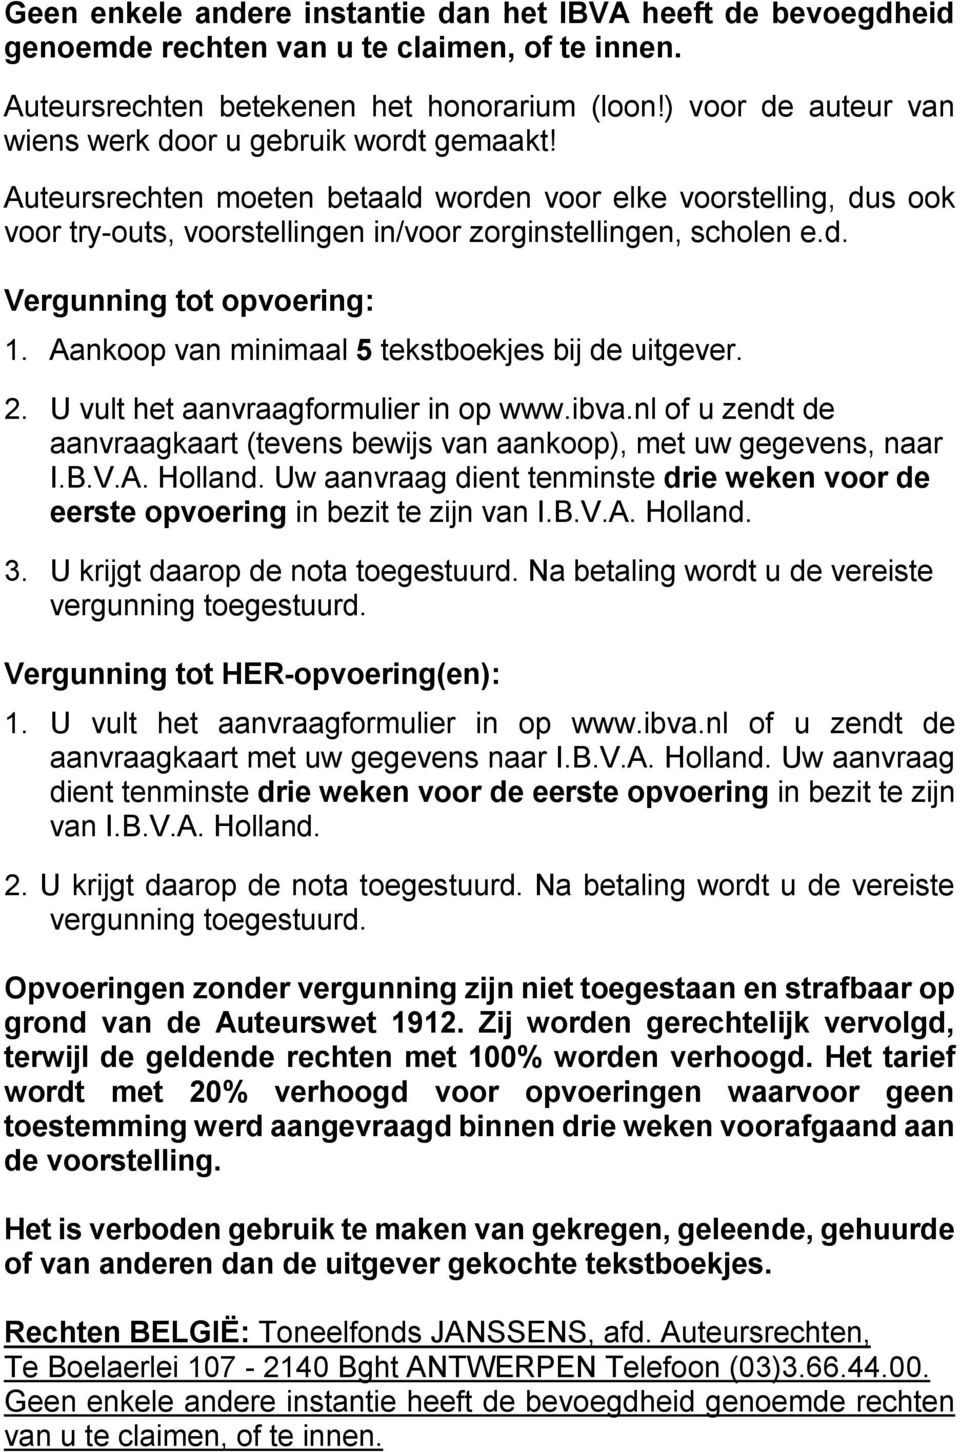 Aankoop van minimaal 5 tekstboekjes bij de uitgever. 2. U vult het aanvraagformulier in op www.ibva.nl of u zendt de aanvraagkaart (tevens bewijs van aankoop), met uw gegevens, naar I.B.V.A. Holland.